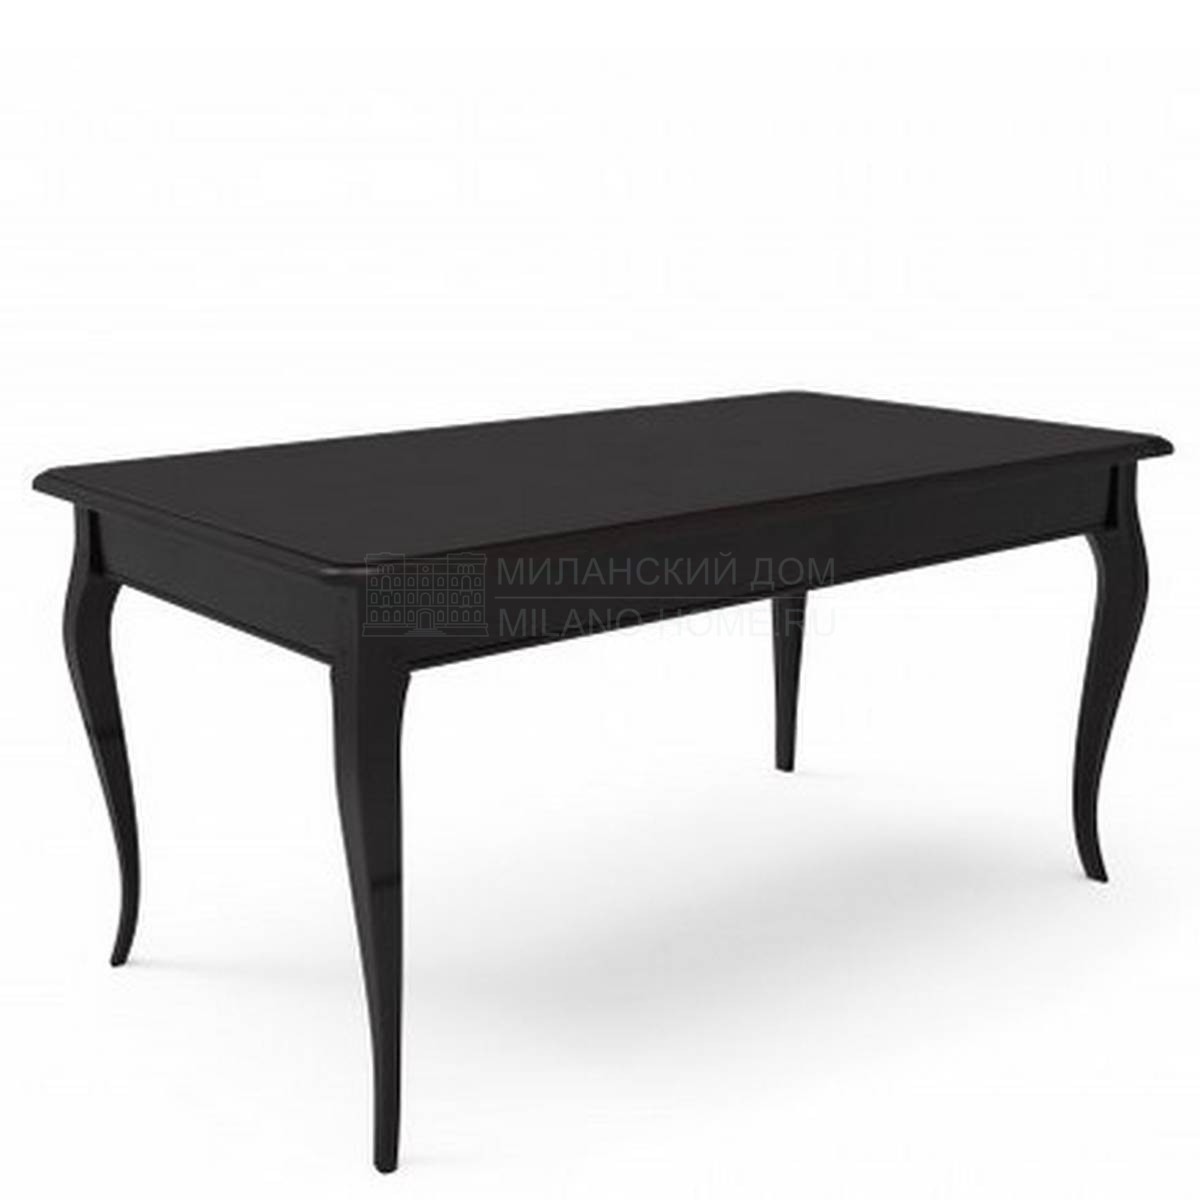 Обеденный стол Eye rectangular dining table extendable из Италии фабрики MARIONI